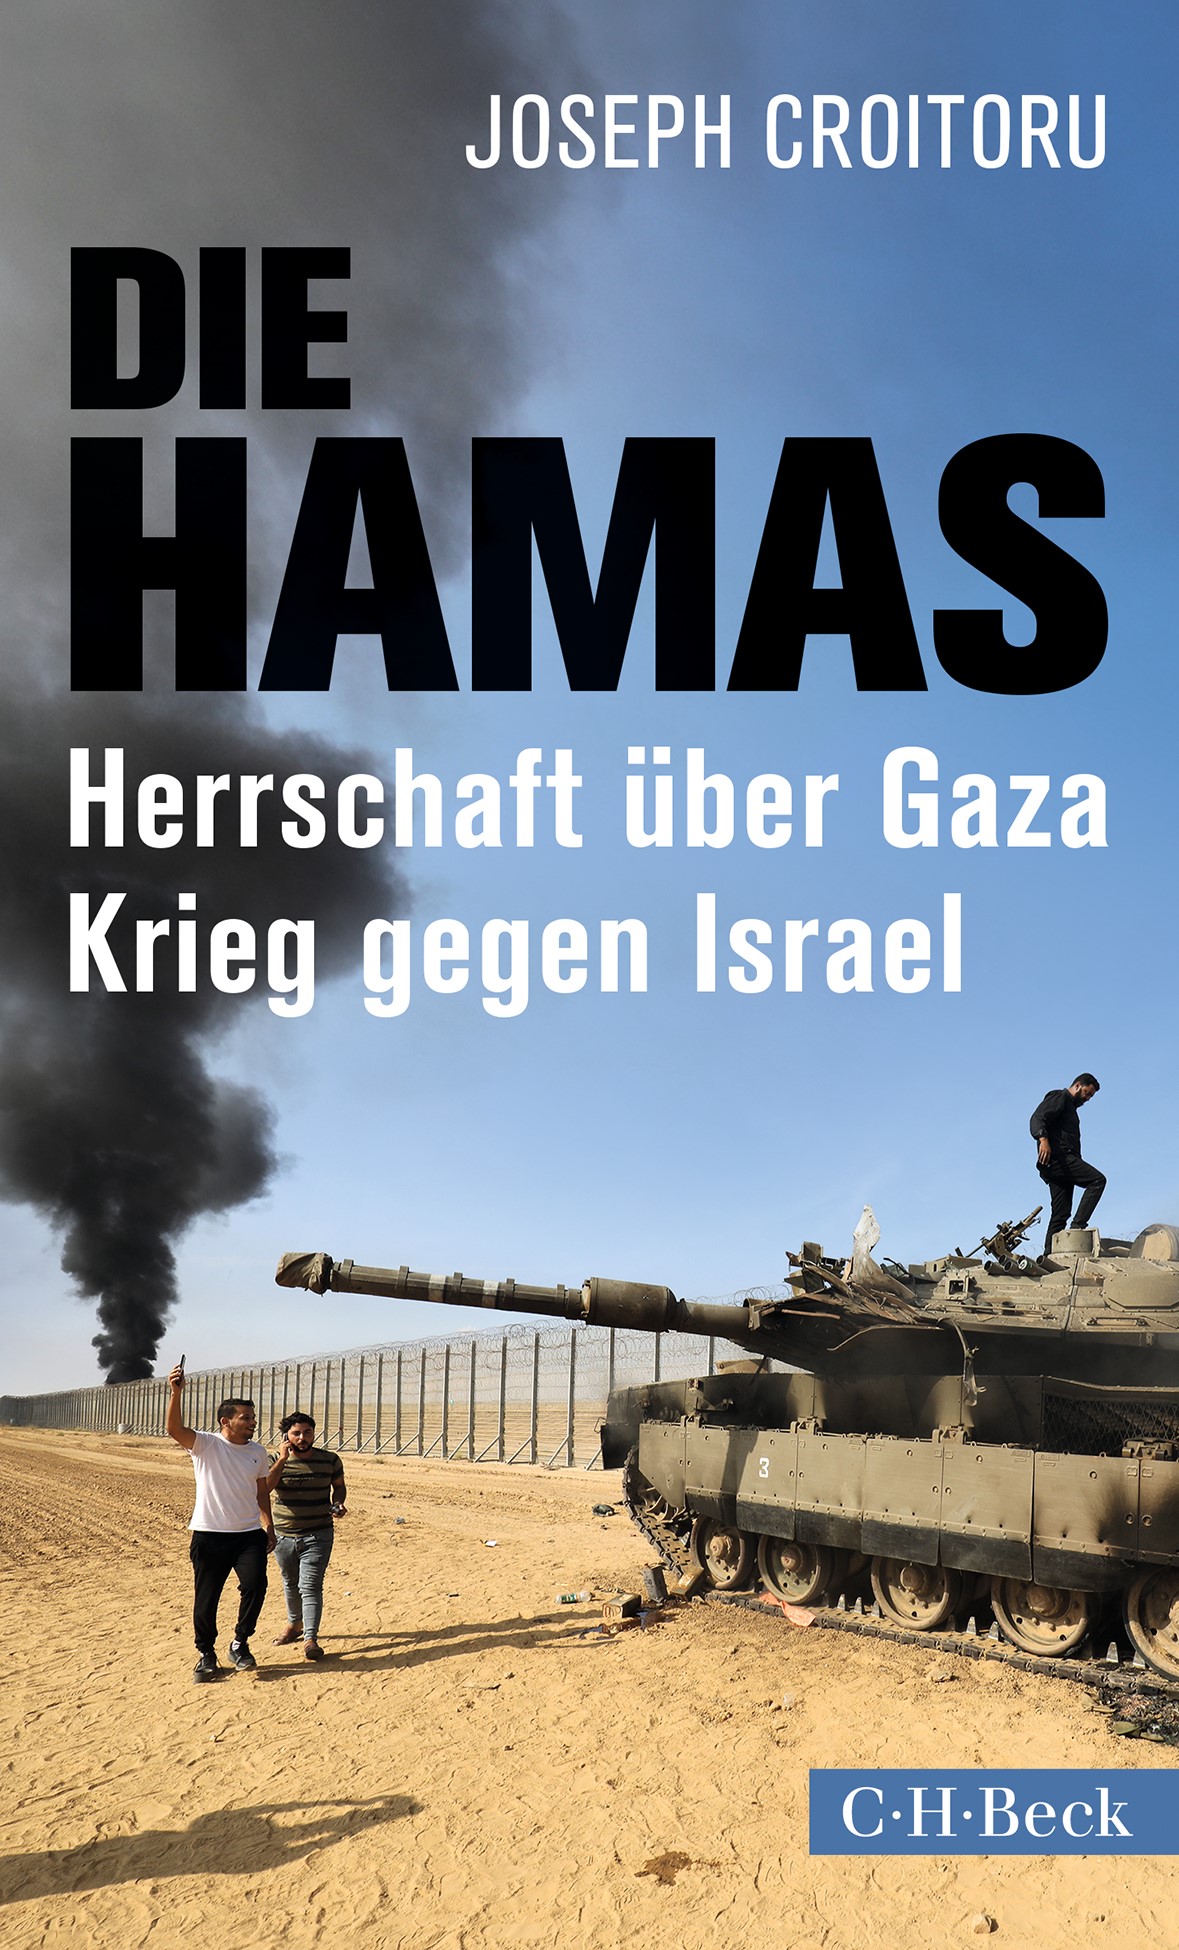 Cover: Croitoru, Joseph, Die Hamas